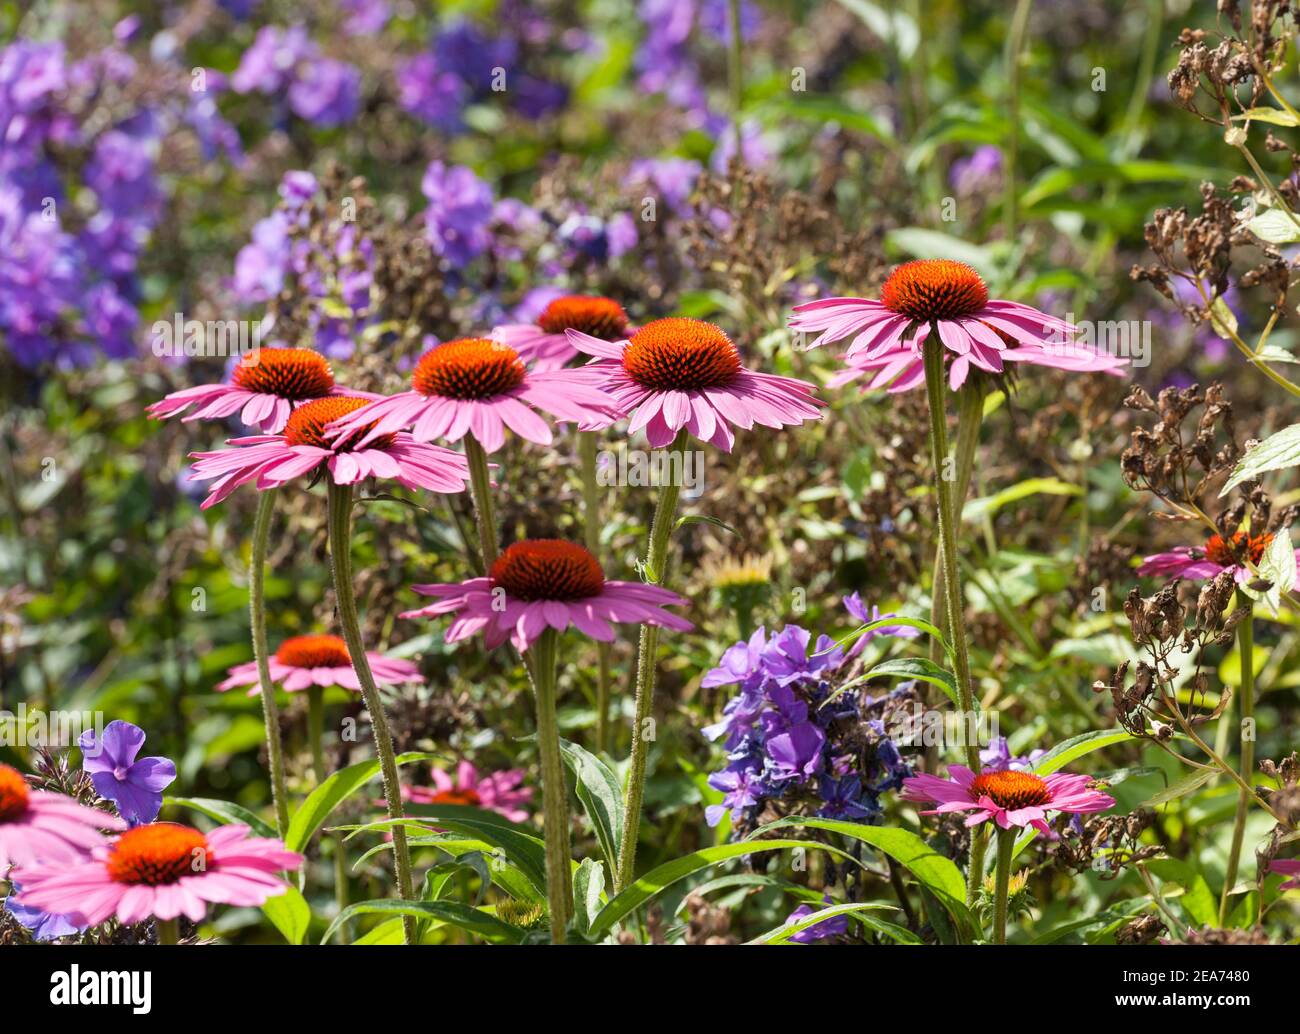 Echinacea purpurea rubinstern flowers Stock Photo